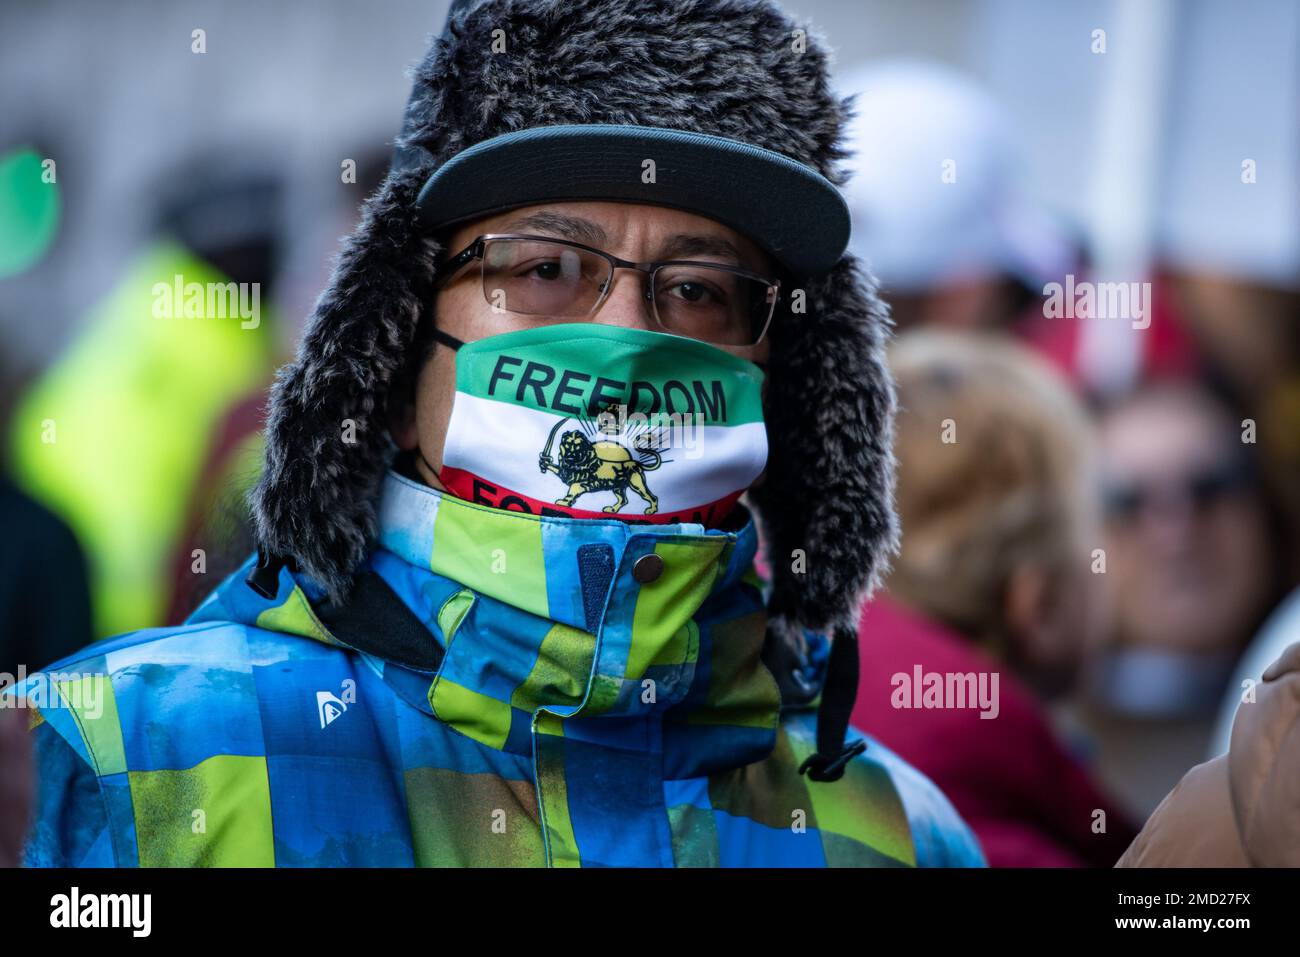 Ein Demonstrant trägt eine Gesichtsmaske, die während der "Unterstützung der iranischen Revolution" "Freiheit für den Iran" sagt. Protest. Die Demonstranten haben sich in London zur Unterstützung der Frauen im Iran versammelt, während sie für ihre Freiheit kämpfen. Nach dem Tod einer 22-jährigen Frau im Iran, Mahsa Amini, durch die Hände der „Moralpolizei“, weil sie ihre Haare nicht richtig vertuscht hatte, sind die Frauen des Iran auf die Straße gegangen, um ihre Freiheit zu fordern. Frauen im Iran sind gezwungen, sich an obligatorische Tarngesetze zu halten, und können sich wegen der Nichteinhaltung der Kleiderordnung mit Inhaftierung, Belästigung und Folter konfrontiert sehen. Stockfoto